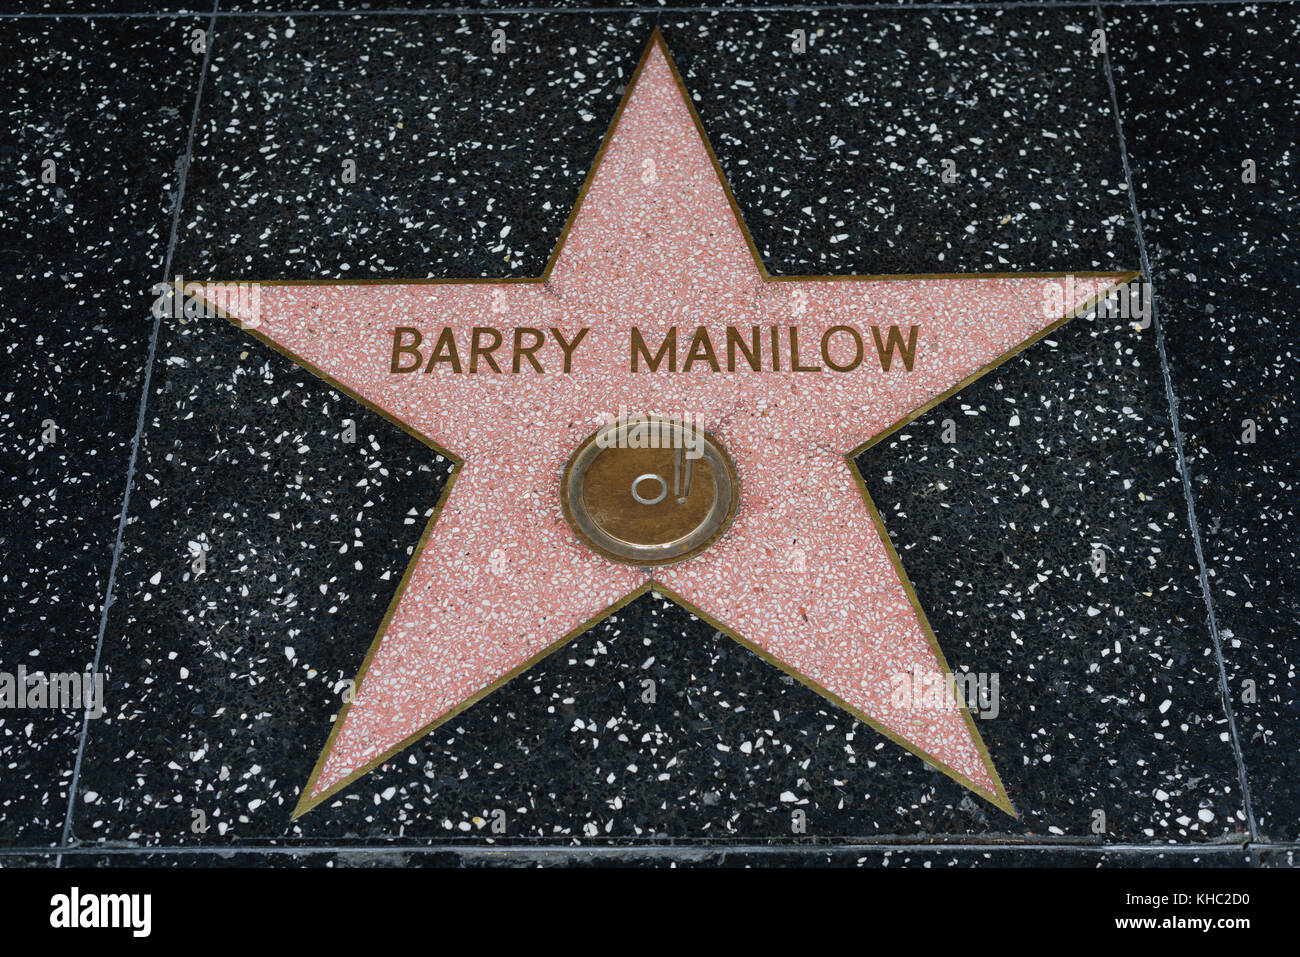 HOLLYWOOD, CA - 06 DÉCEMBRE : la star de Barry Manilow sur le Hollywood Walk of Fame à Hollywood, Californie, le 6 décembre 2016. Banque D'Images